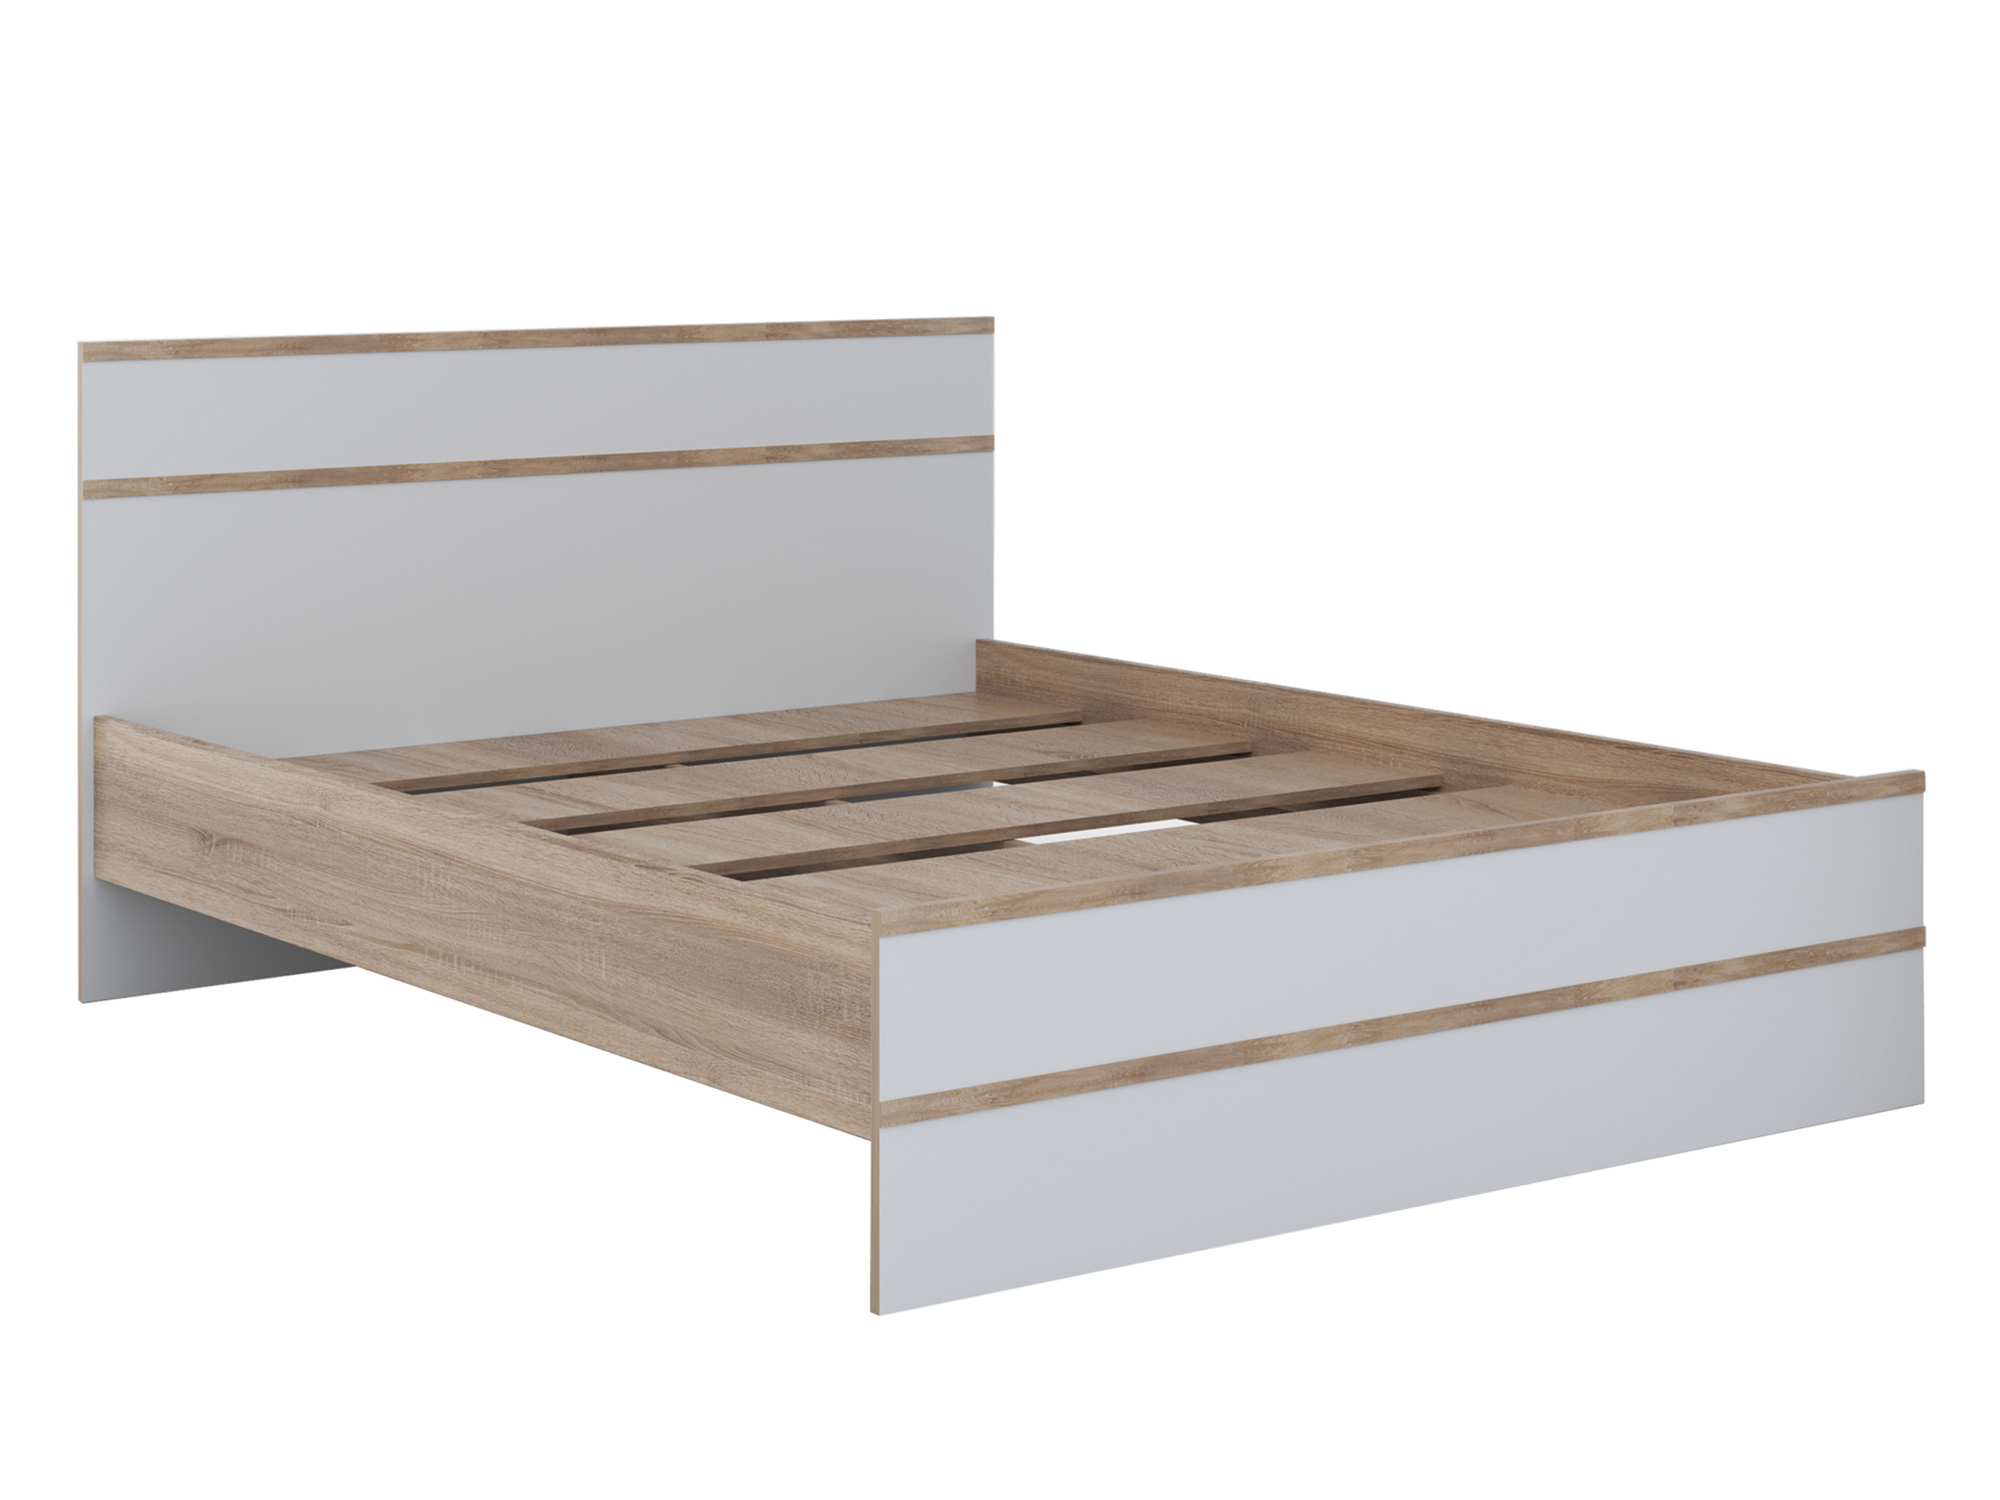 Кровать Сакура (140х200) Белый, Бежевый, ЛДСП кровать сакура 140х200 сонома бежевый массив хвойных пород дерева